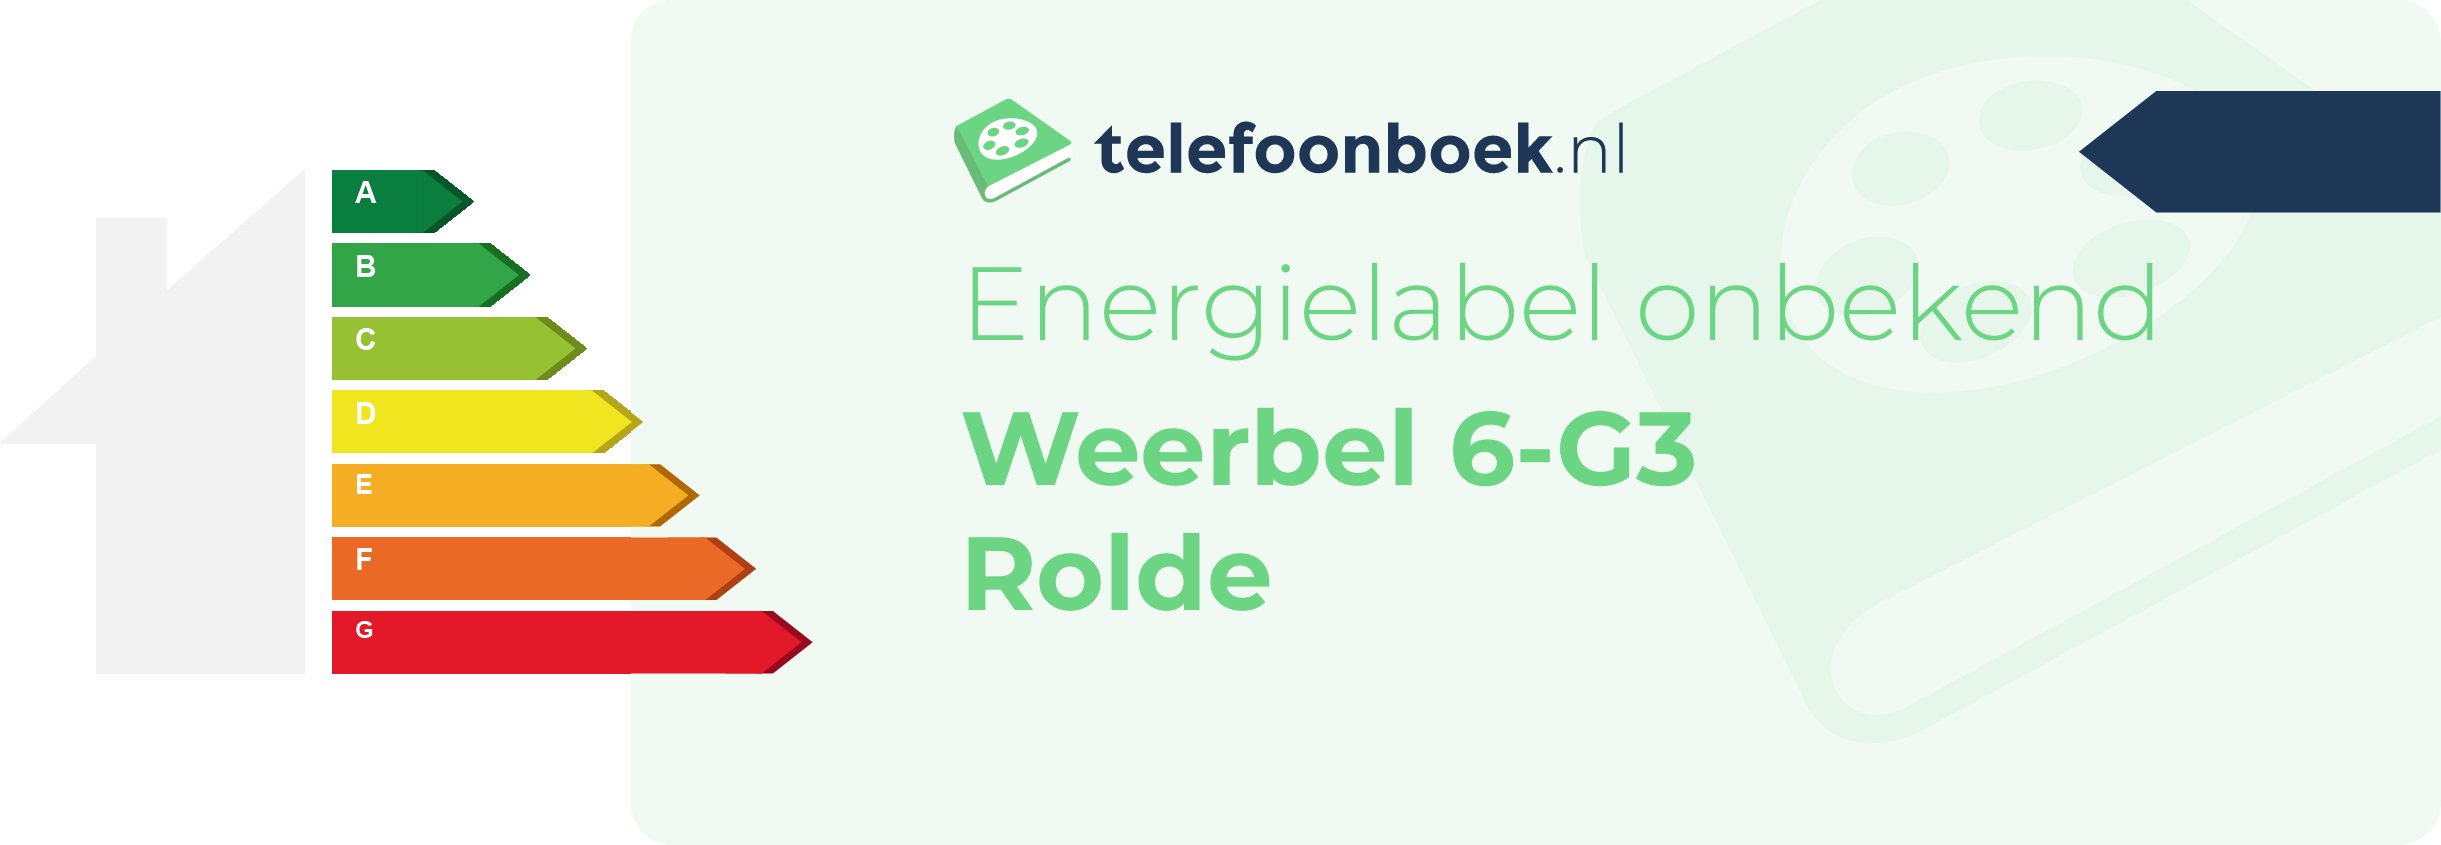 Energielabel Weerbel 6-G3 Rolde